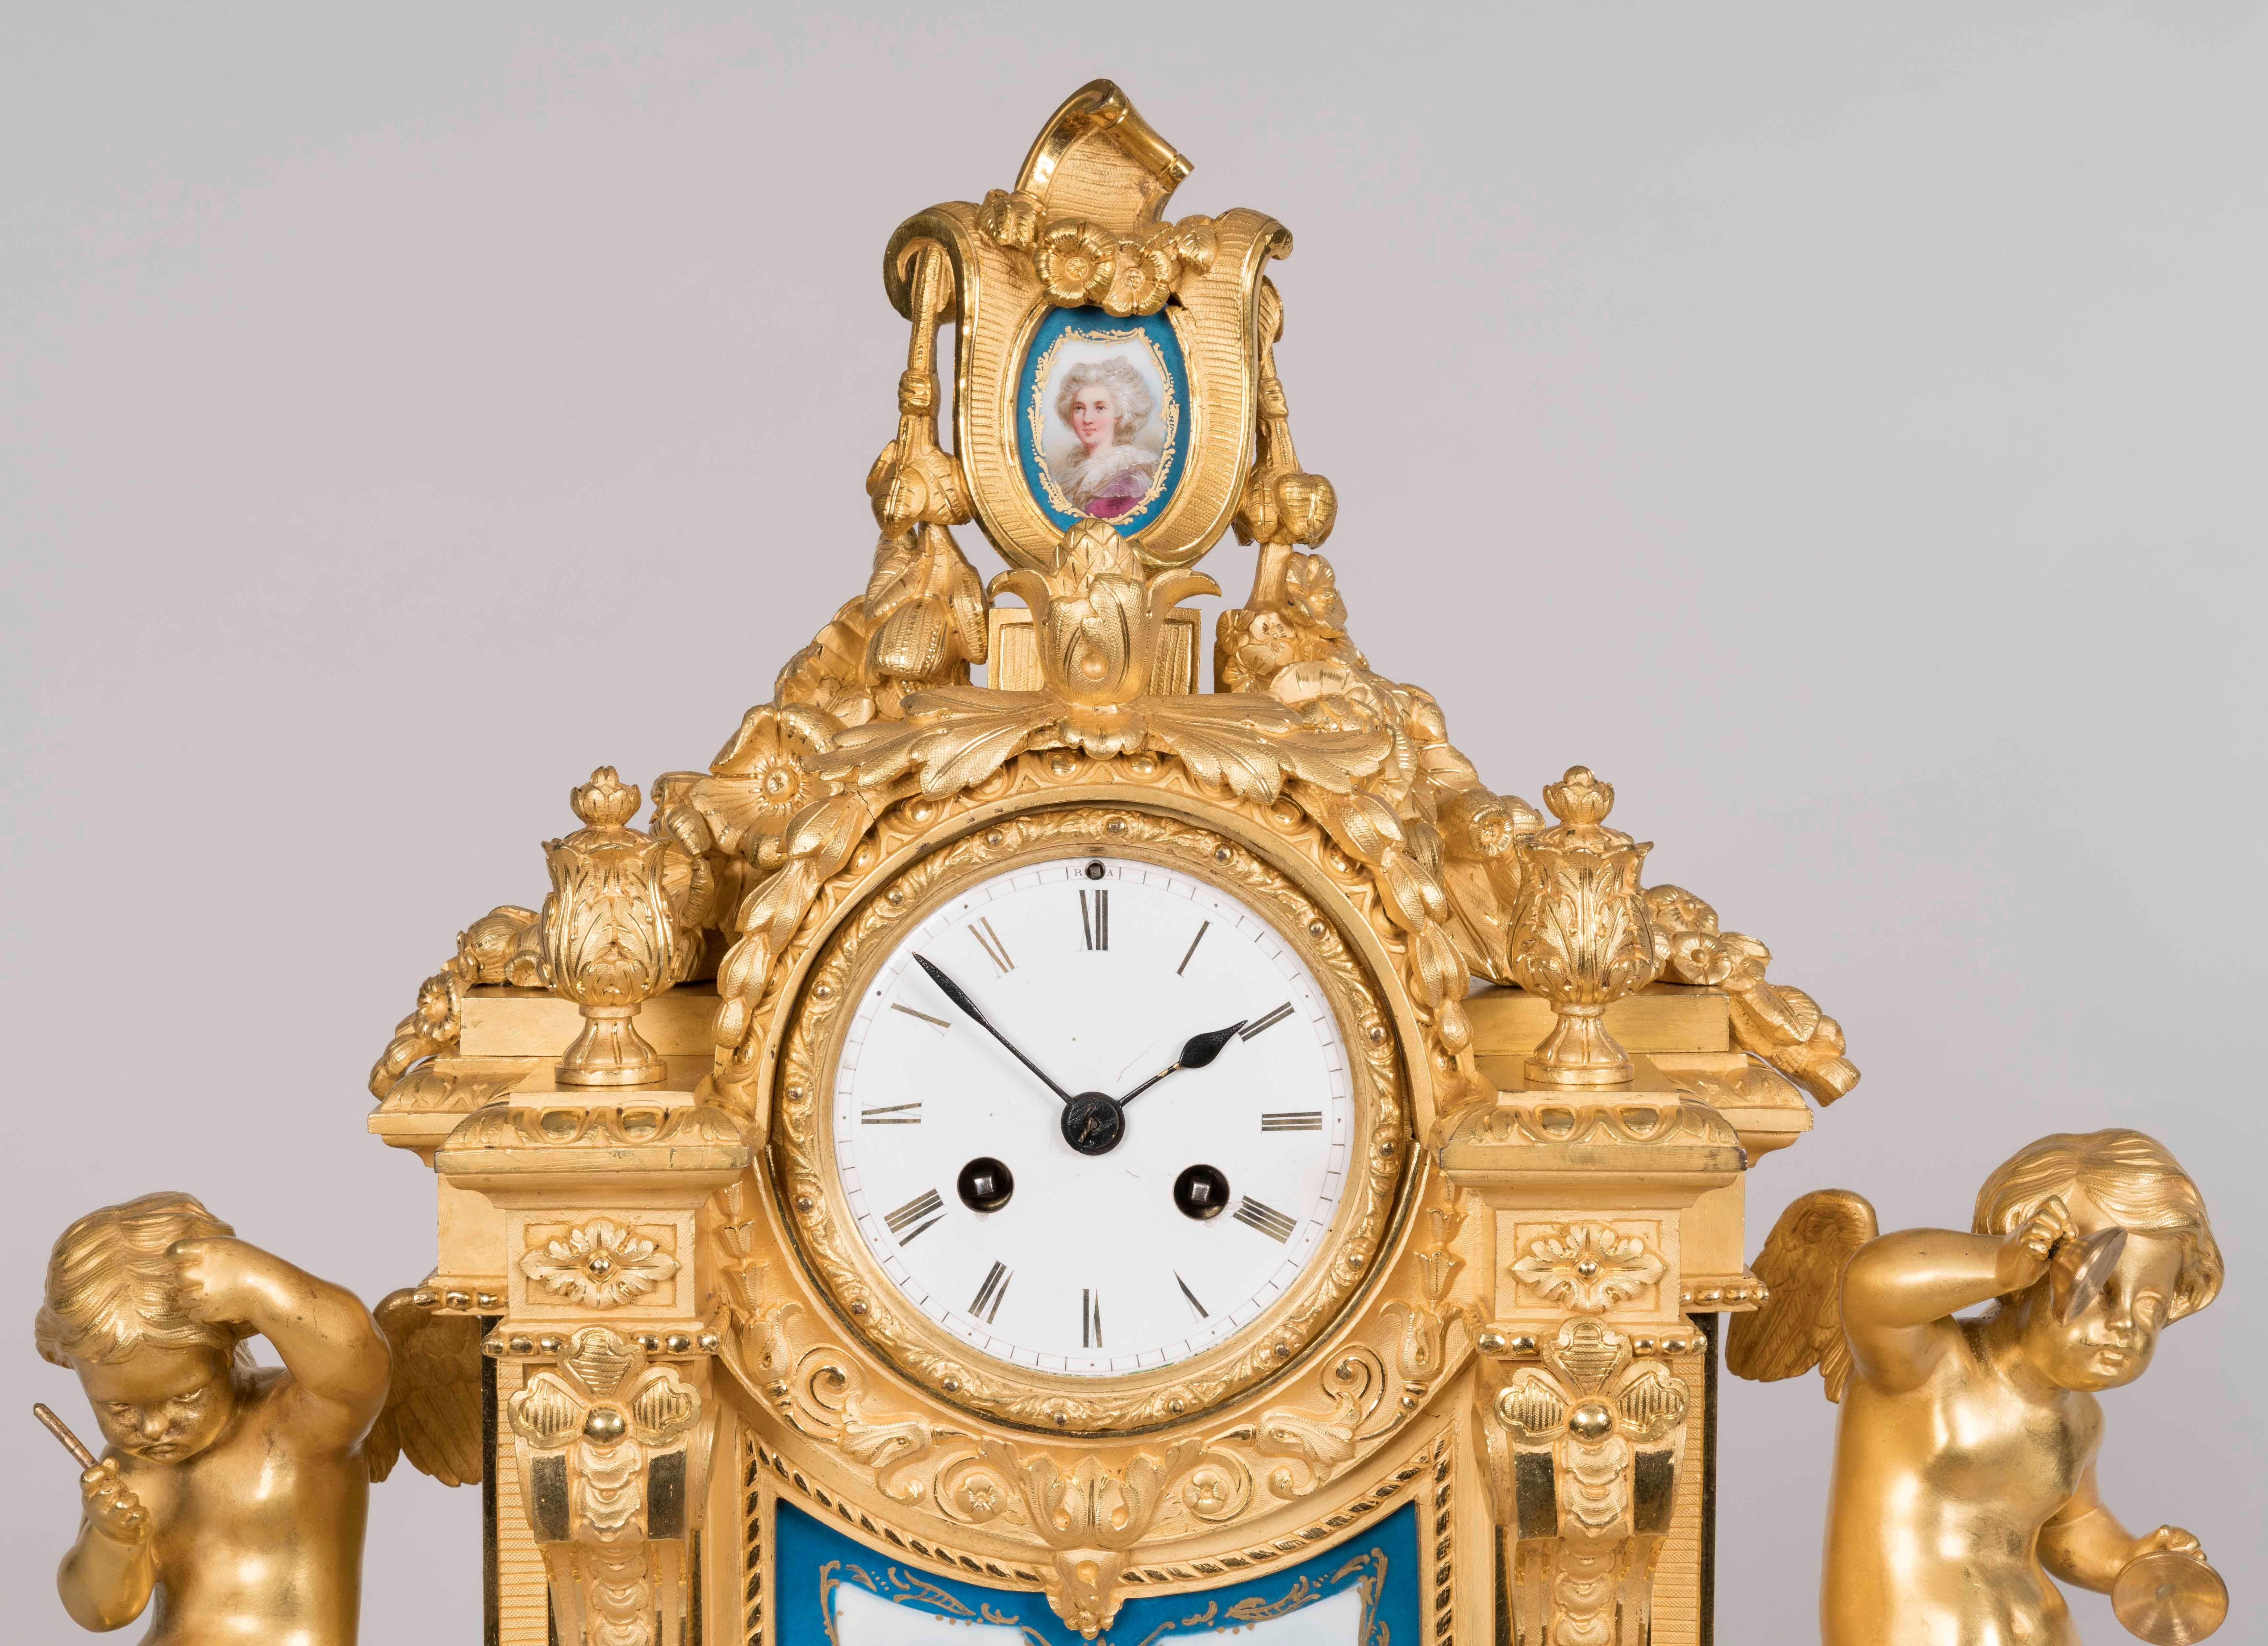 Eine Manteluhr im Louis-XVI-Stil von Raingo Freres, Paris

Aus vergoldeter Bronze gefertigt und mit Bleu Celeste gerahmten Porzellanpaneelen versehen, die in Sèvres-Manier polychrom verziert sind, mit Schwänzen, Blattwerk und Putten; der auf